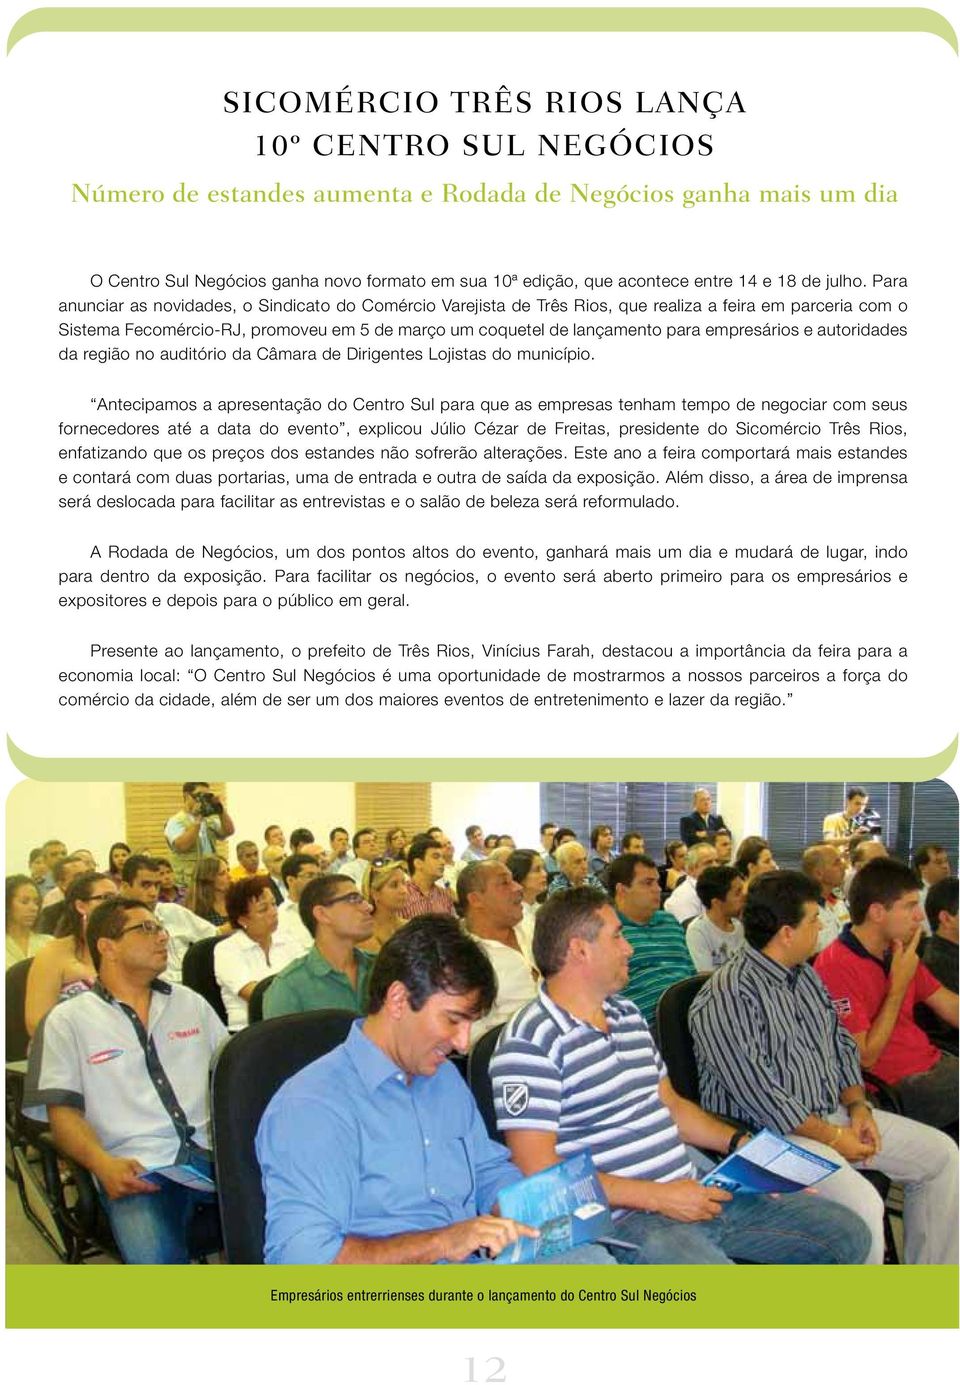 Para anunciar as novidades, o Sindicato do Comércio Varejista de Três Rios, que realiza a feira em parceria com o Sistema Fecomércio-RJ, promoveu em 5 de março um coquetel de lançamento para